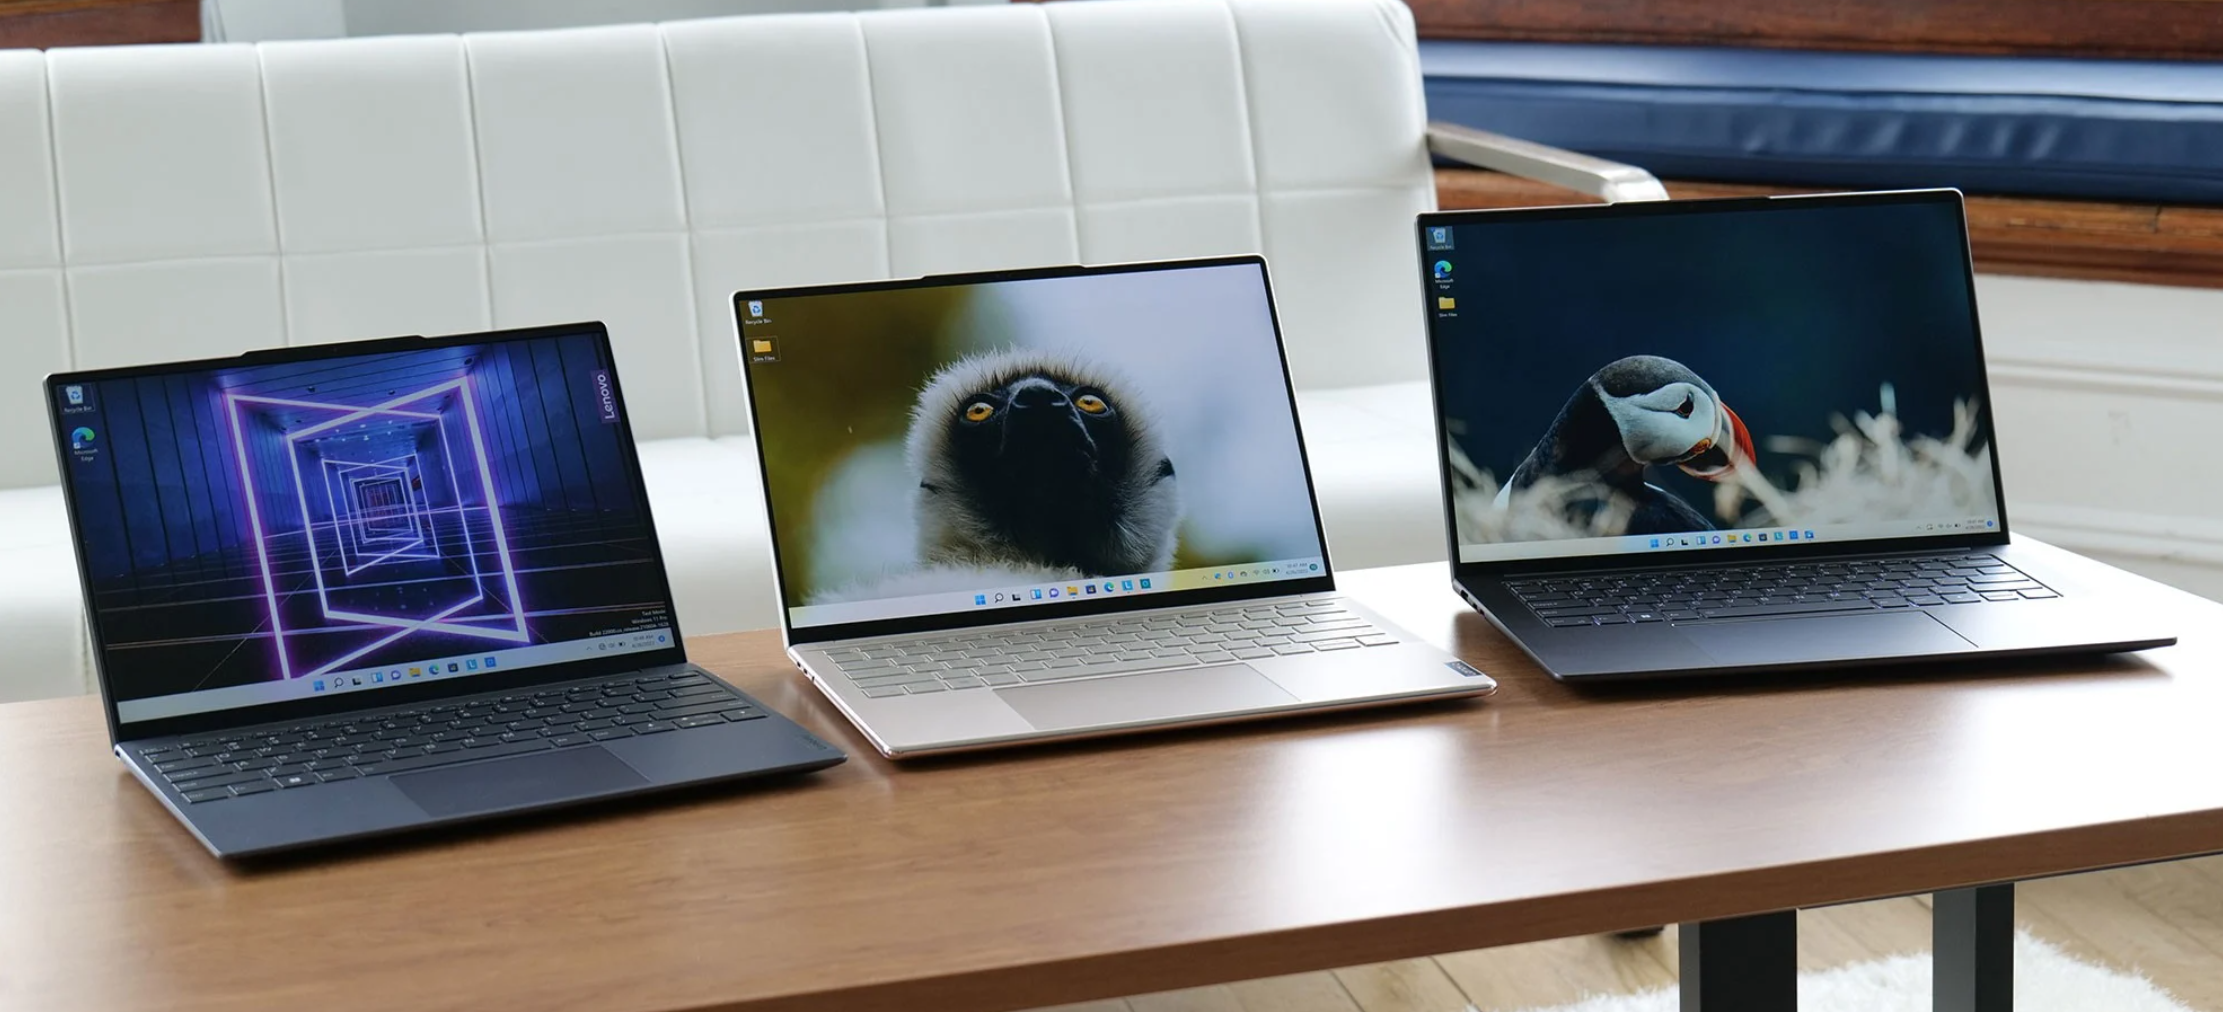 Τέσσερα νέα laptops σειράς Yoga Slim έρχονται από τη Lenovo